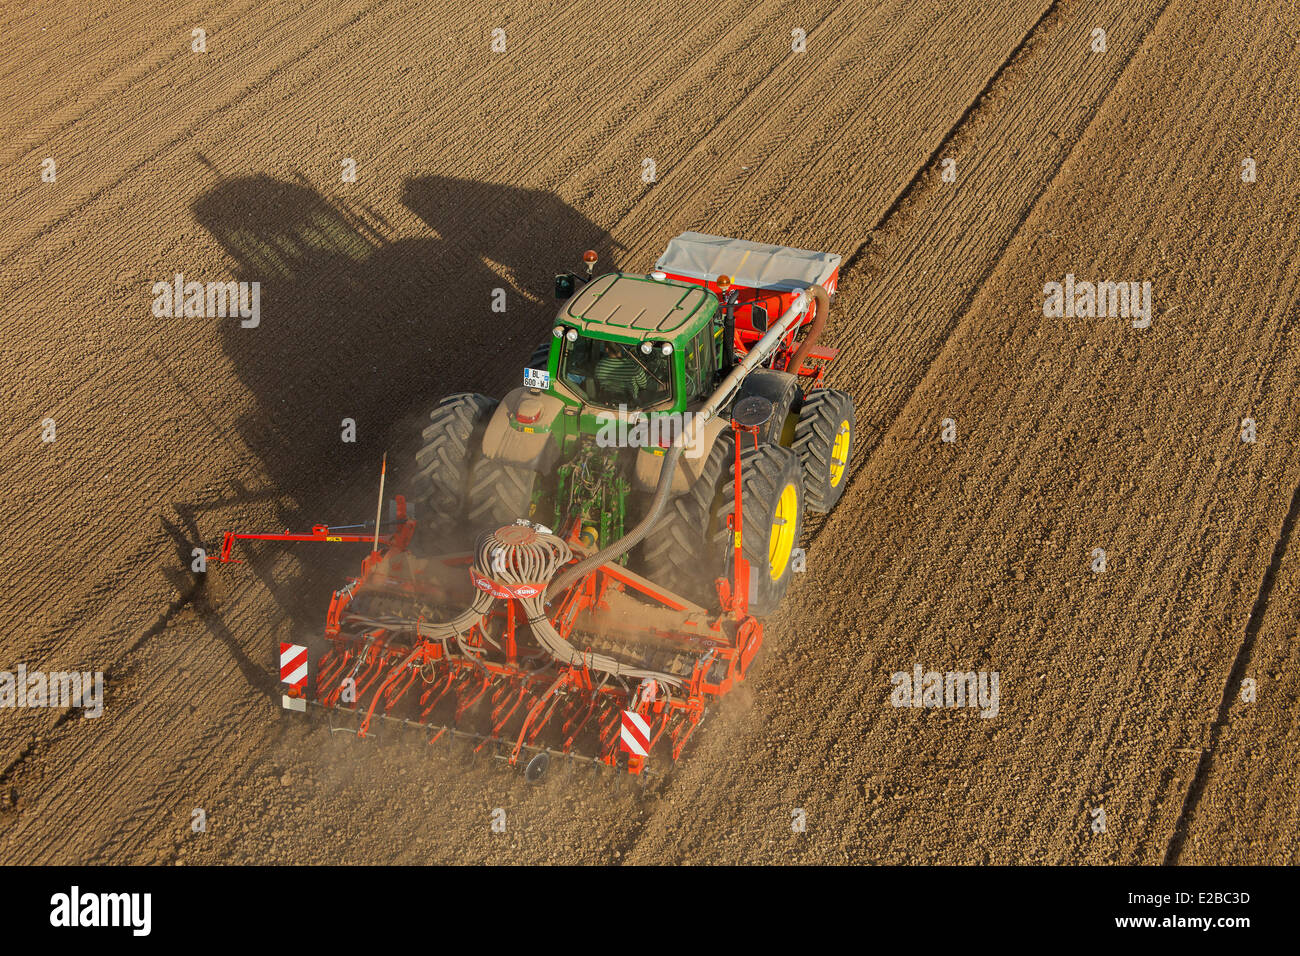 France, Loir et Cher, Tourailles, agricultural work, air seeder (aerial view) Stock Photo